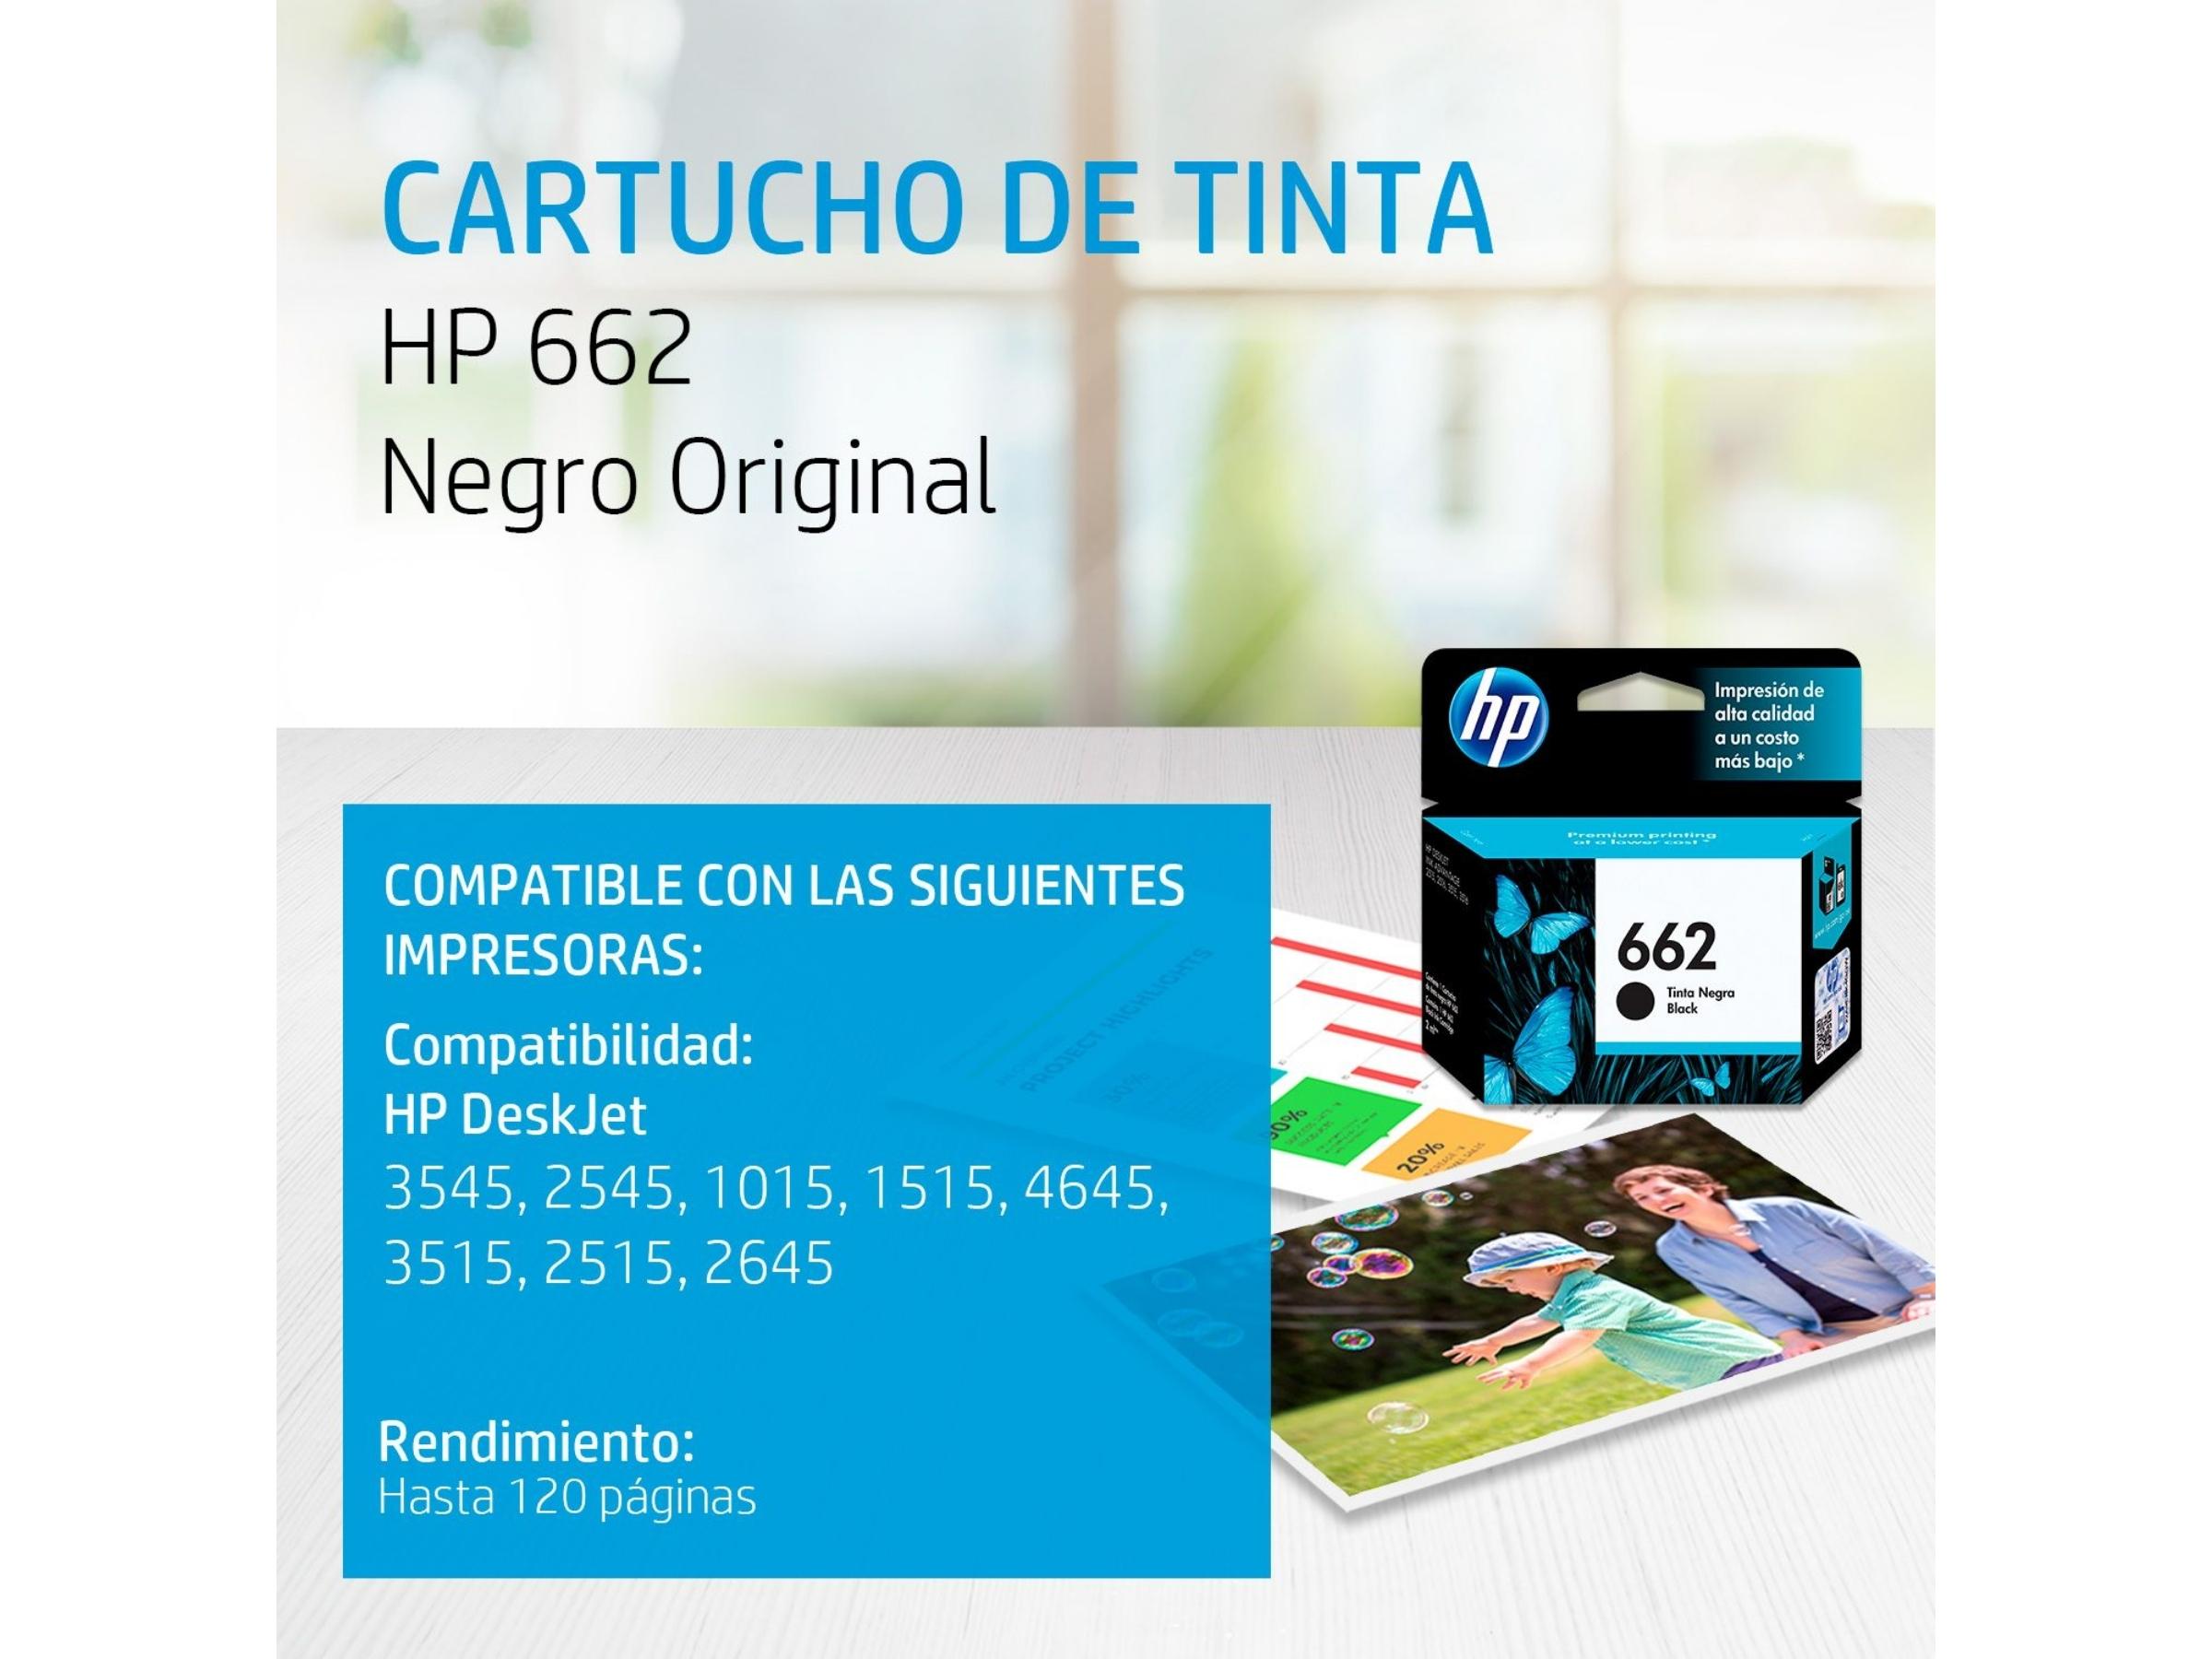 CARTUCHO DE TINTA HP 662 BLACK (CZ103AL) 1015/2515/3515/4645